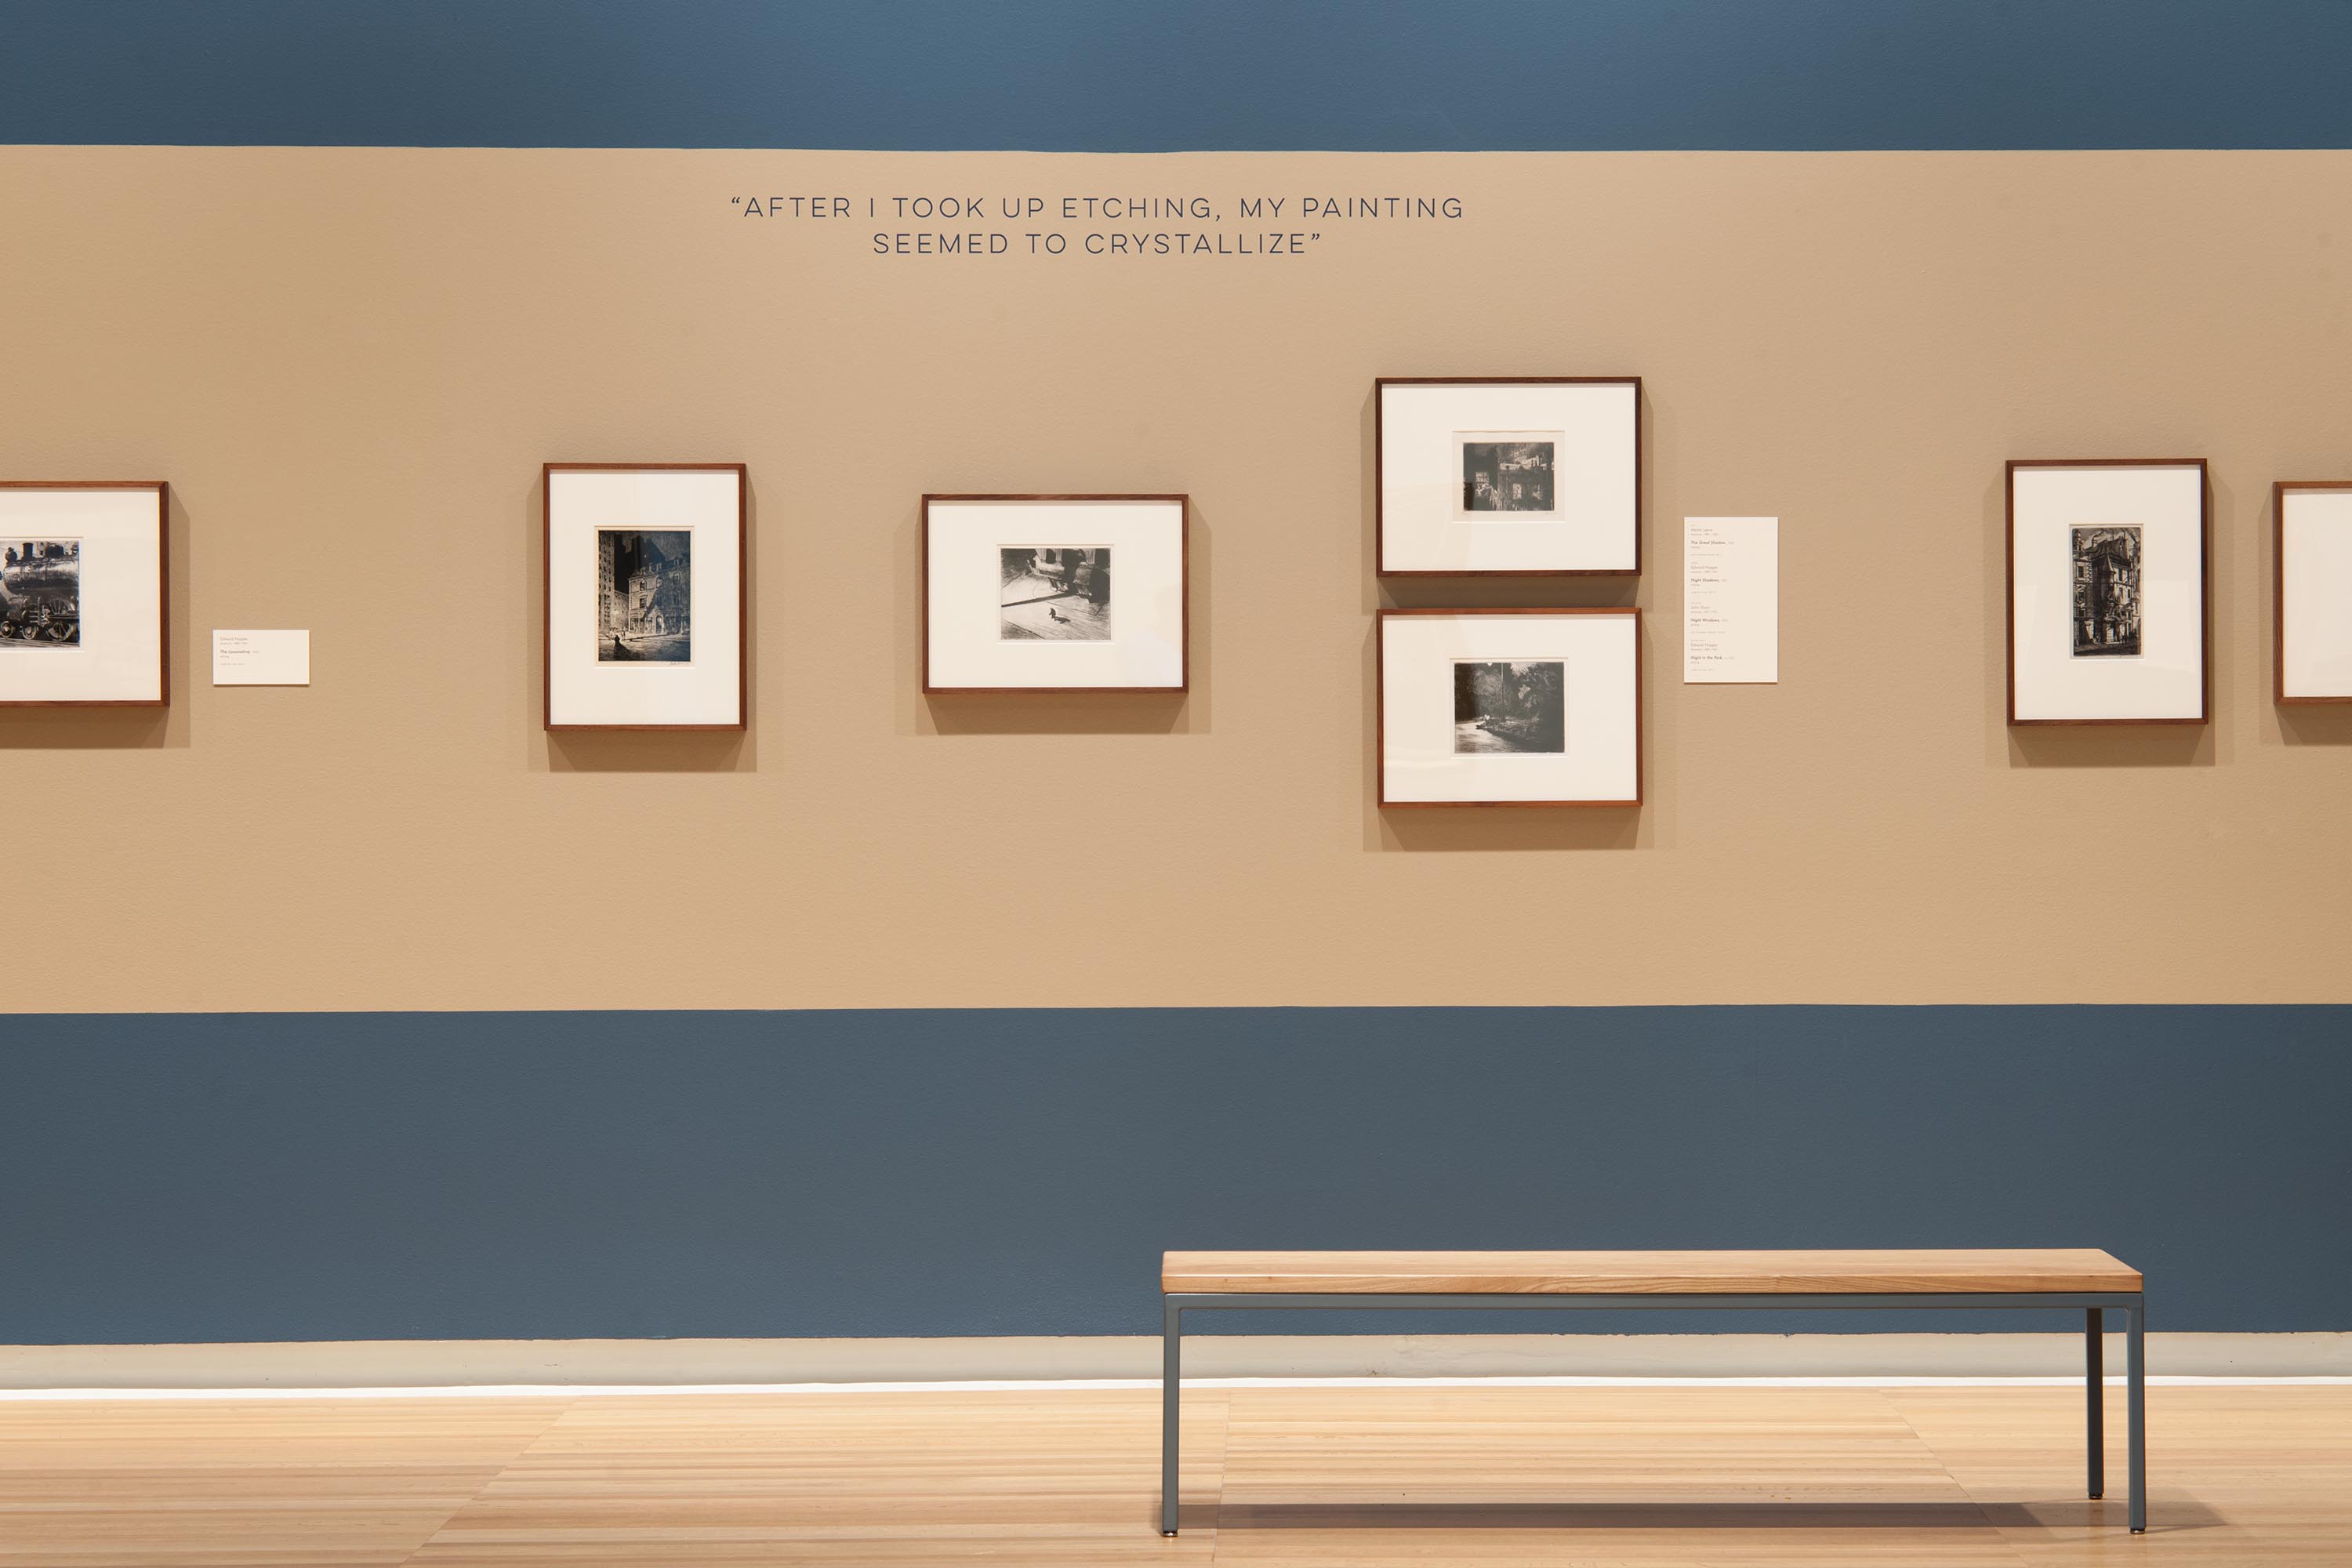 Edward Hopper Exhibition Image